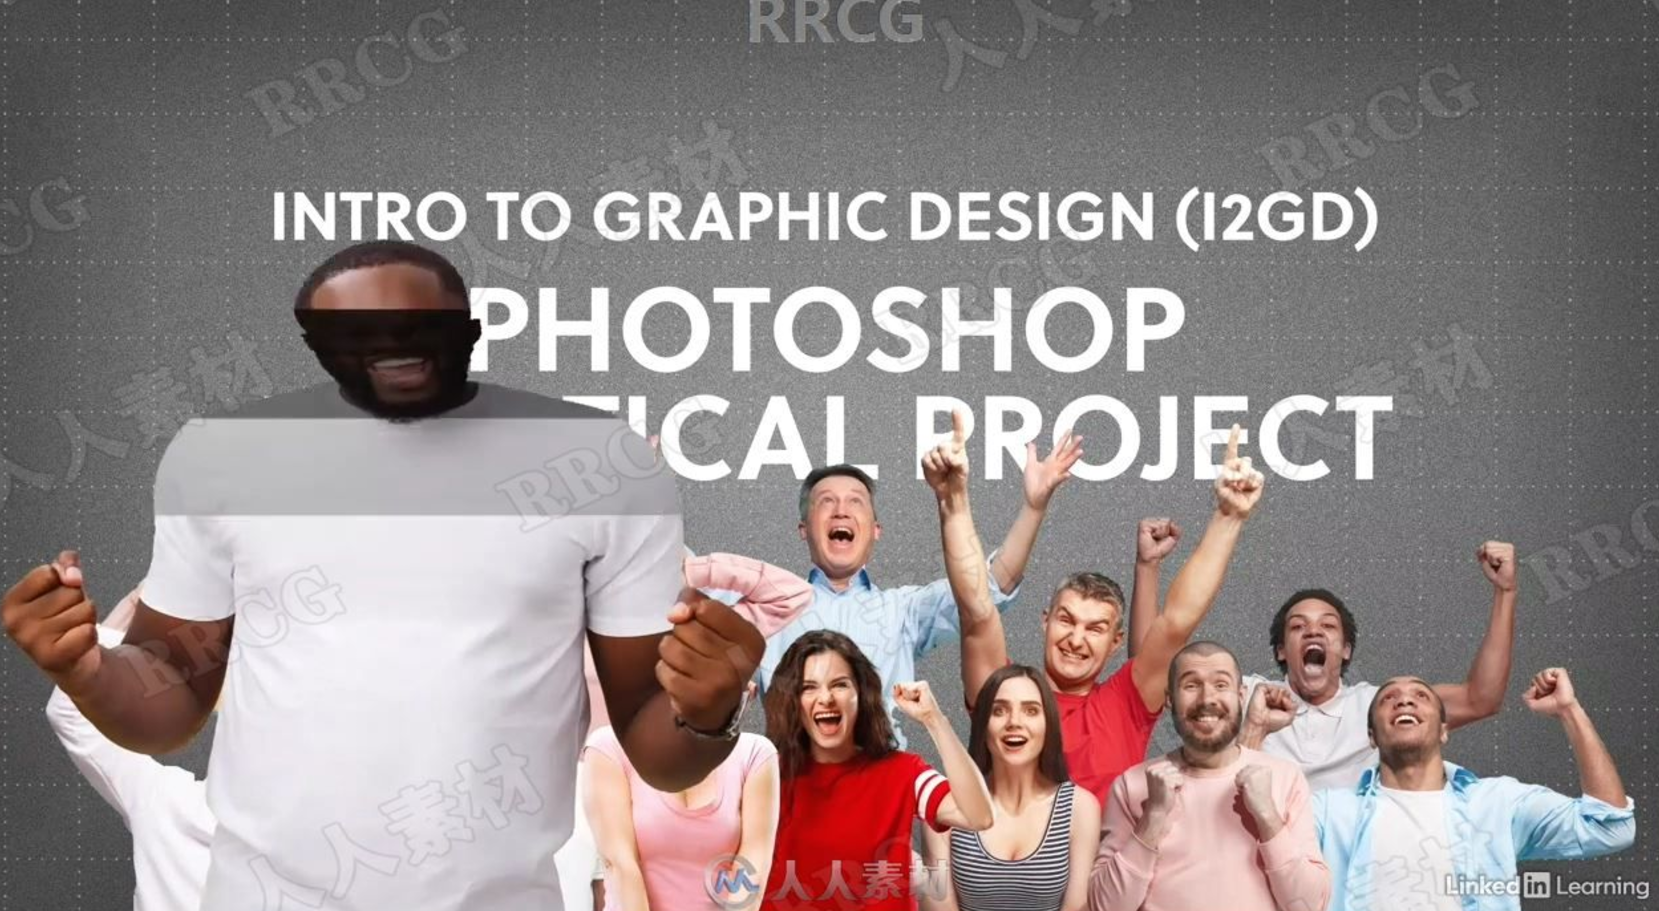 【免费下载】【英文无字幕】Photoshop平面设计核心技能训练视频教程